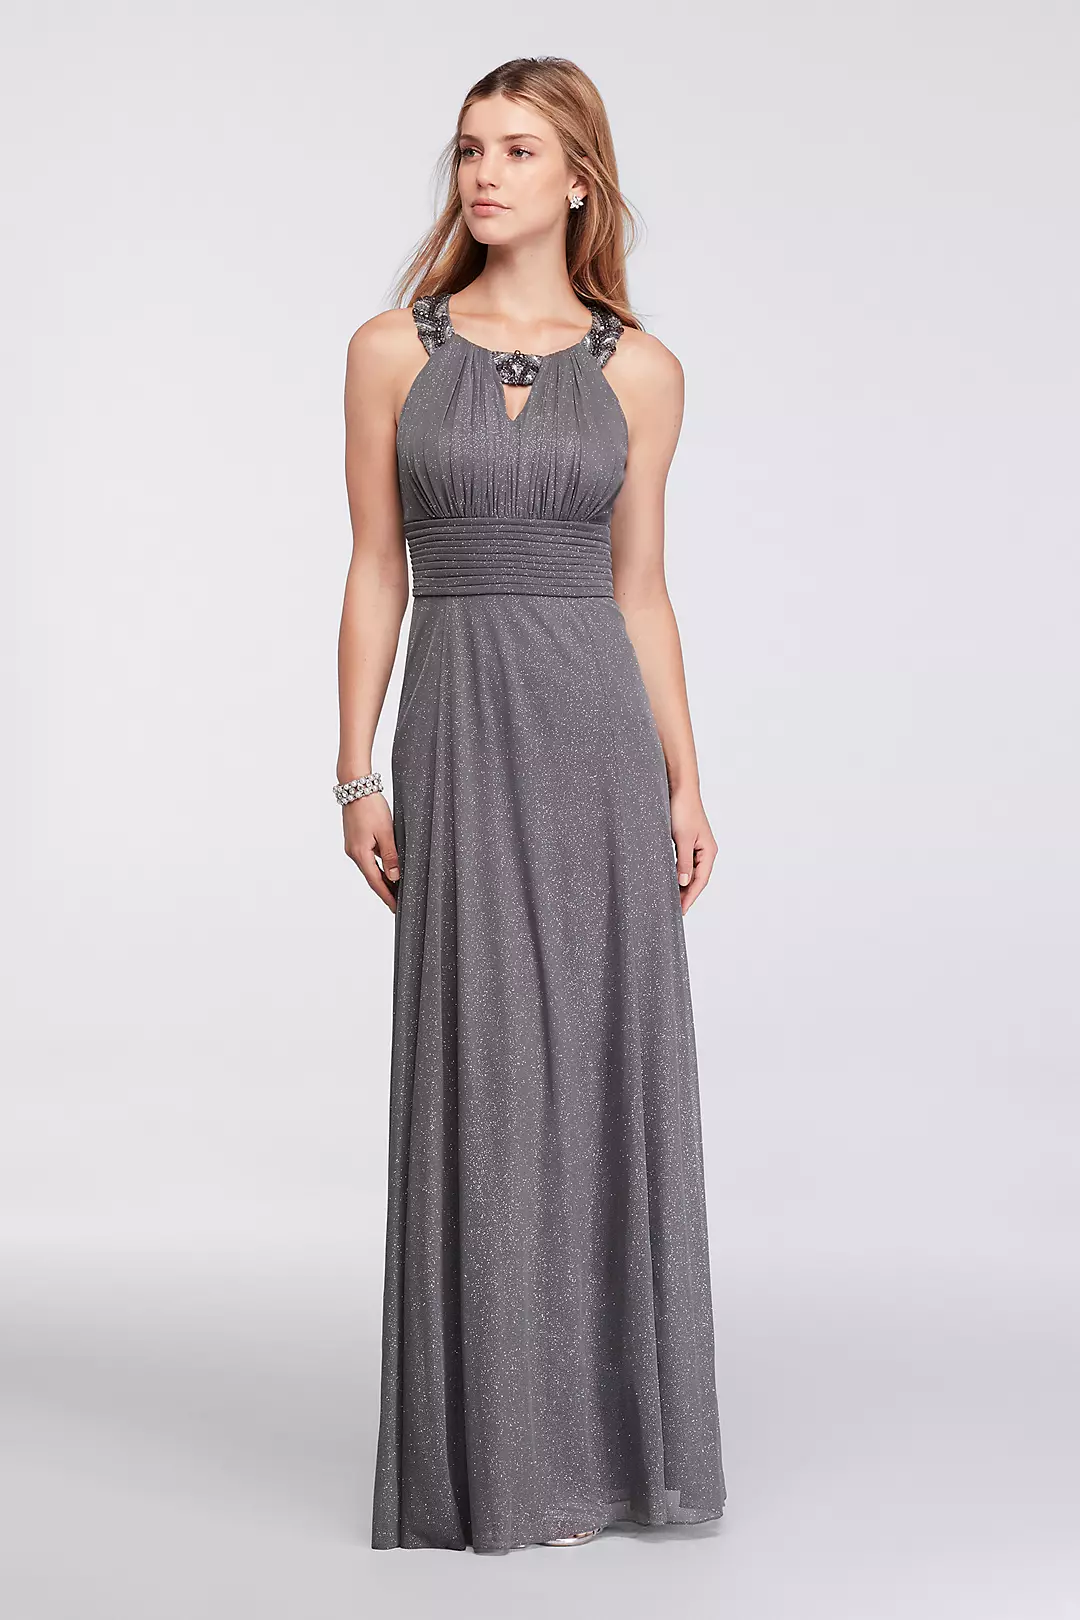 Long Sleeveless Dress with Beaded Keyhole Neckline Image